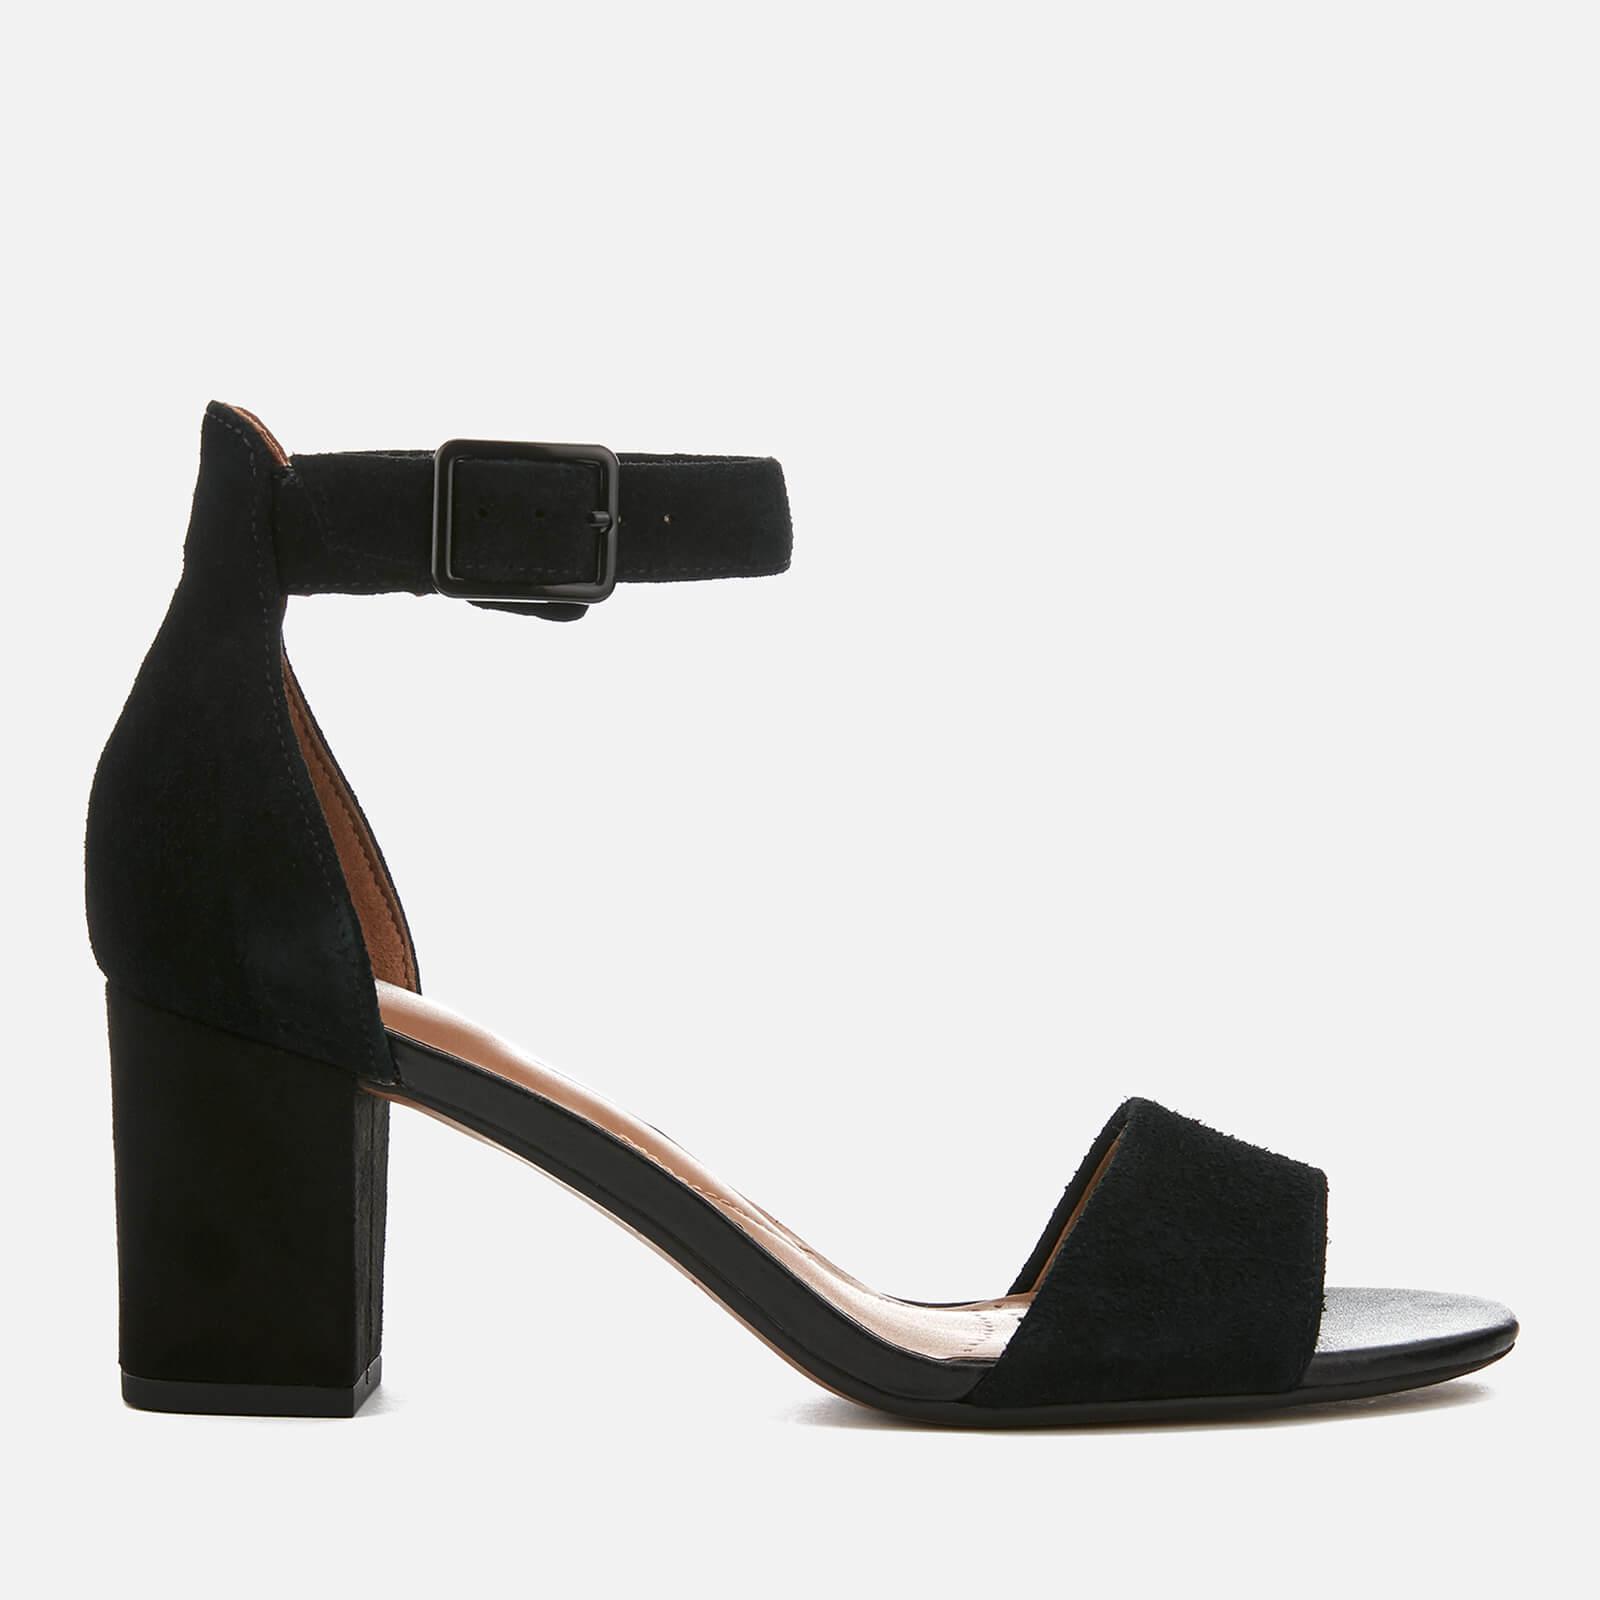 clarks black heeled sandals off 60 